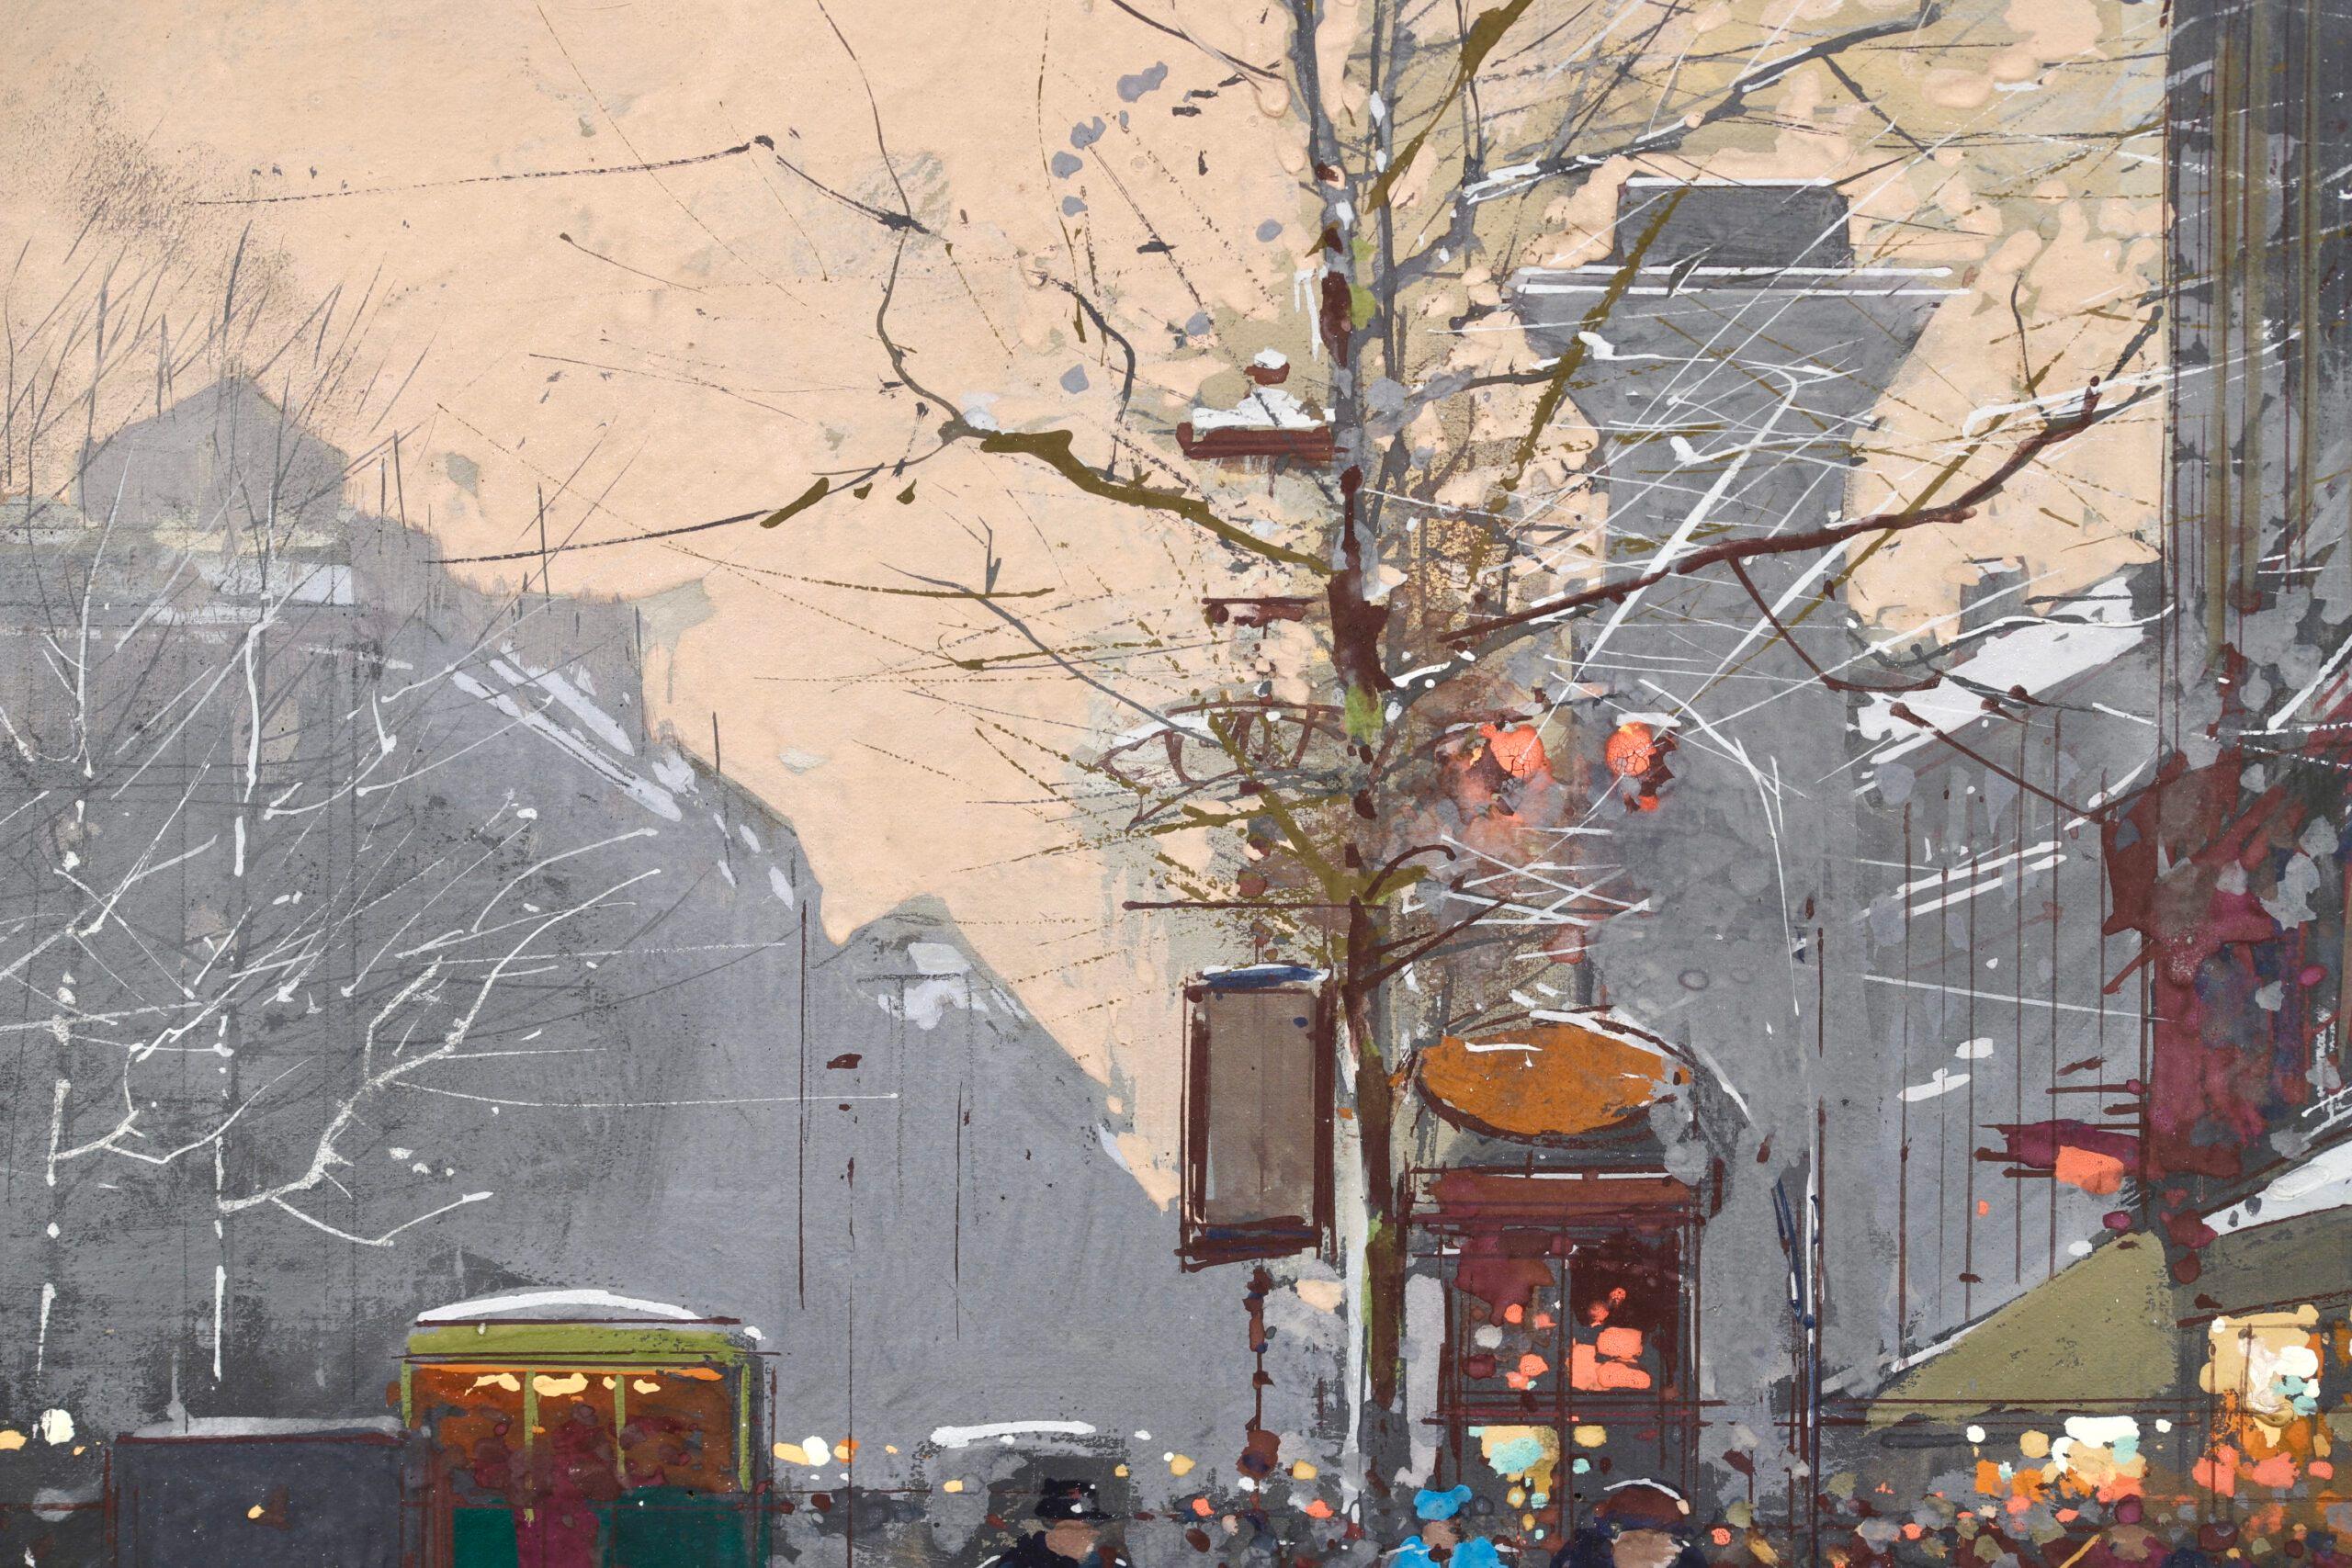 Signierte Gouache auf Karton Figuren in Landschaft um 1920 von Französisch impressionistischen Maler Eduoard Cortes. Das Werk zeigt eine Ansicht von Paris, Frankreich, im Winter. Die Straßen sind erfüllt vom geschäftigen Treiben der Stadtbewohner,